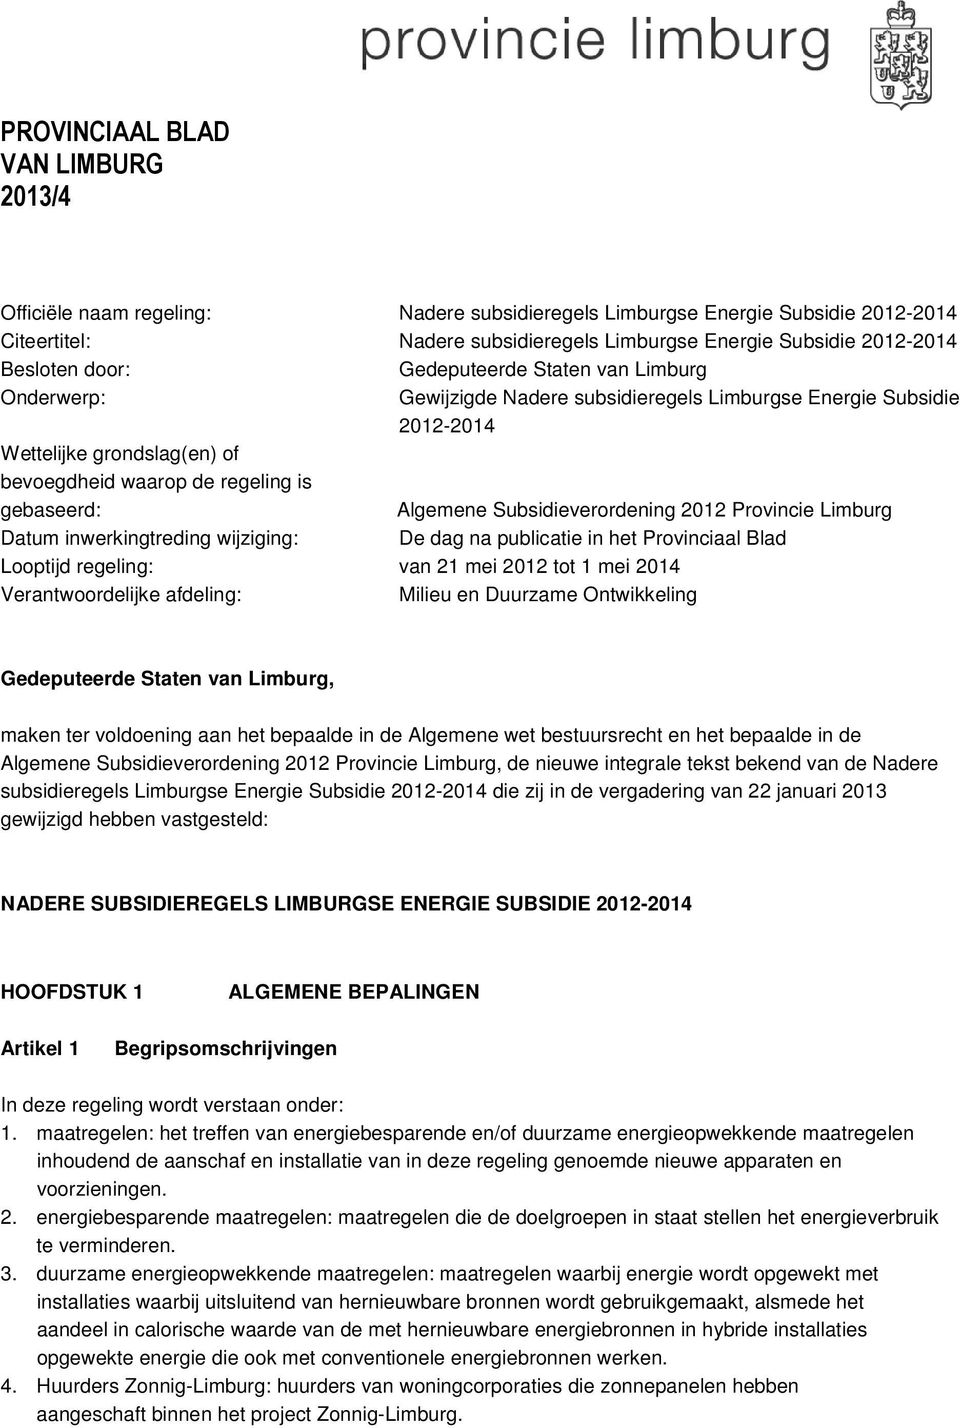 gebaseerd: Algemene Subsidieverordening 2012 Provincie Limburg Datum inwerkingtreding wijziging: De dag na publicatie in het Provinciaal Blad Looptijd regeling: van 21 mei 2012 tot 1 mei 2014